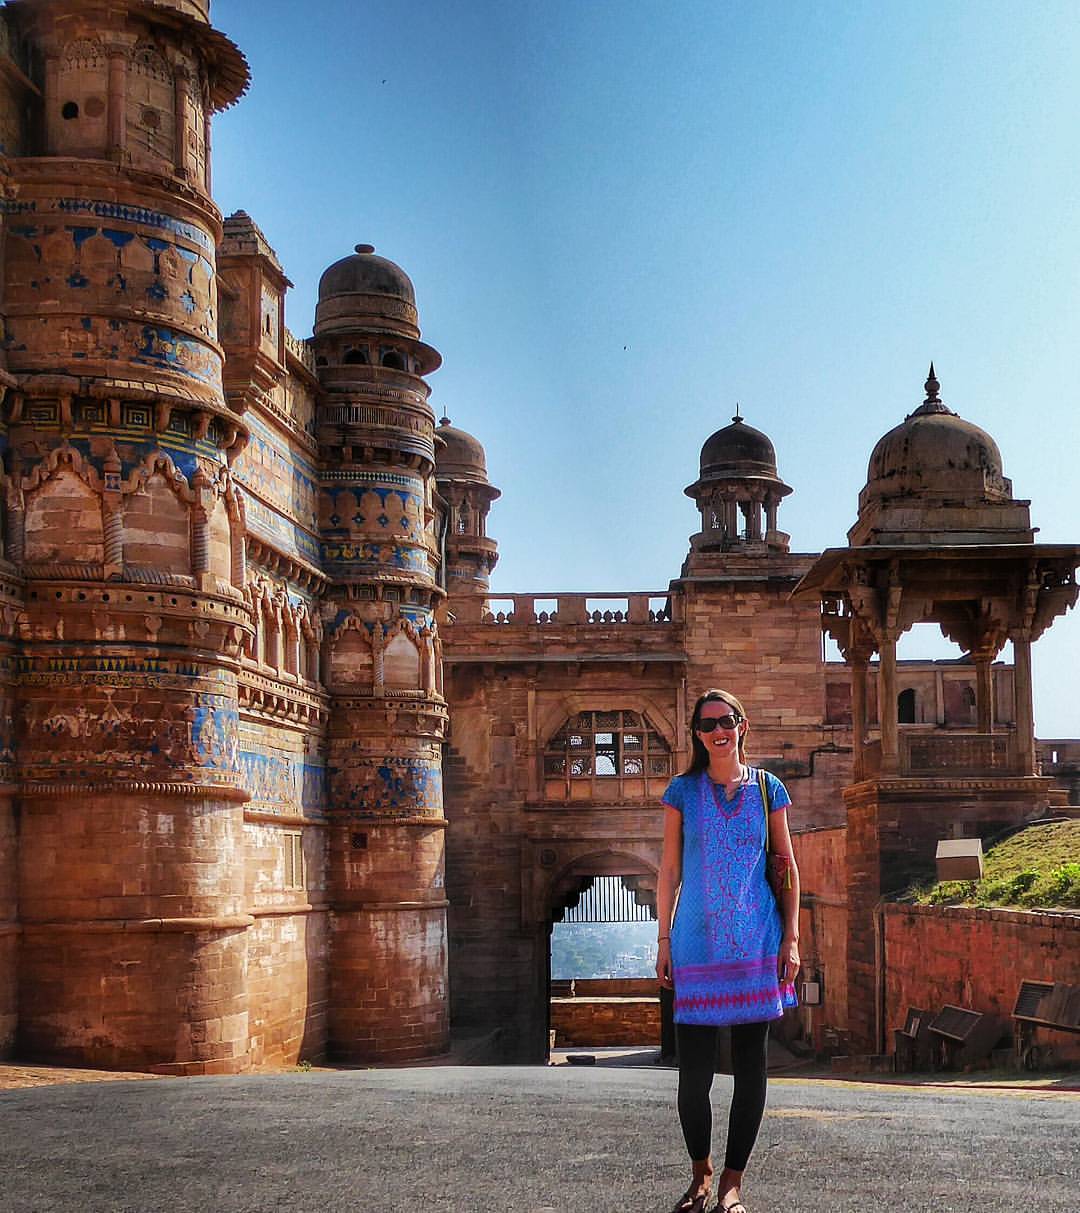 Anna Gwalior Fort, Madhya Pradesh